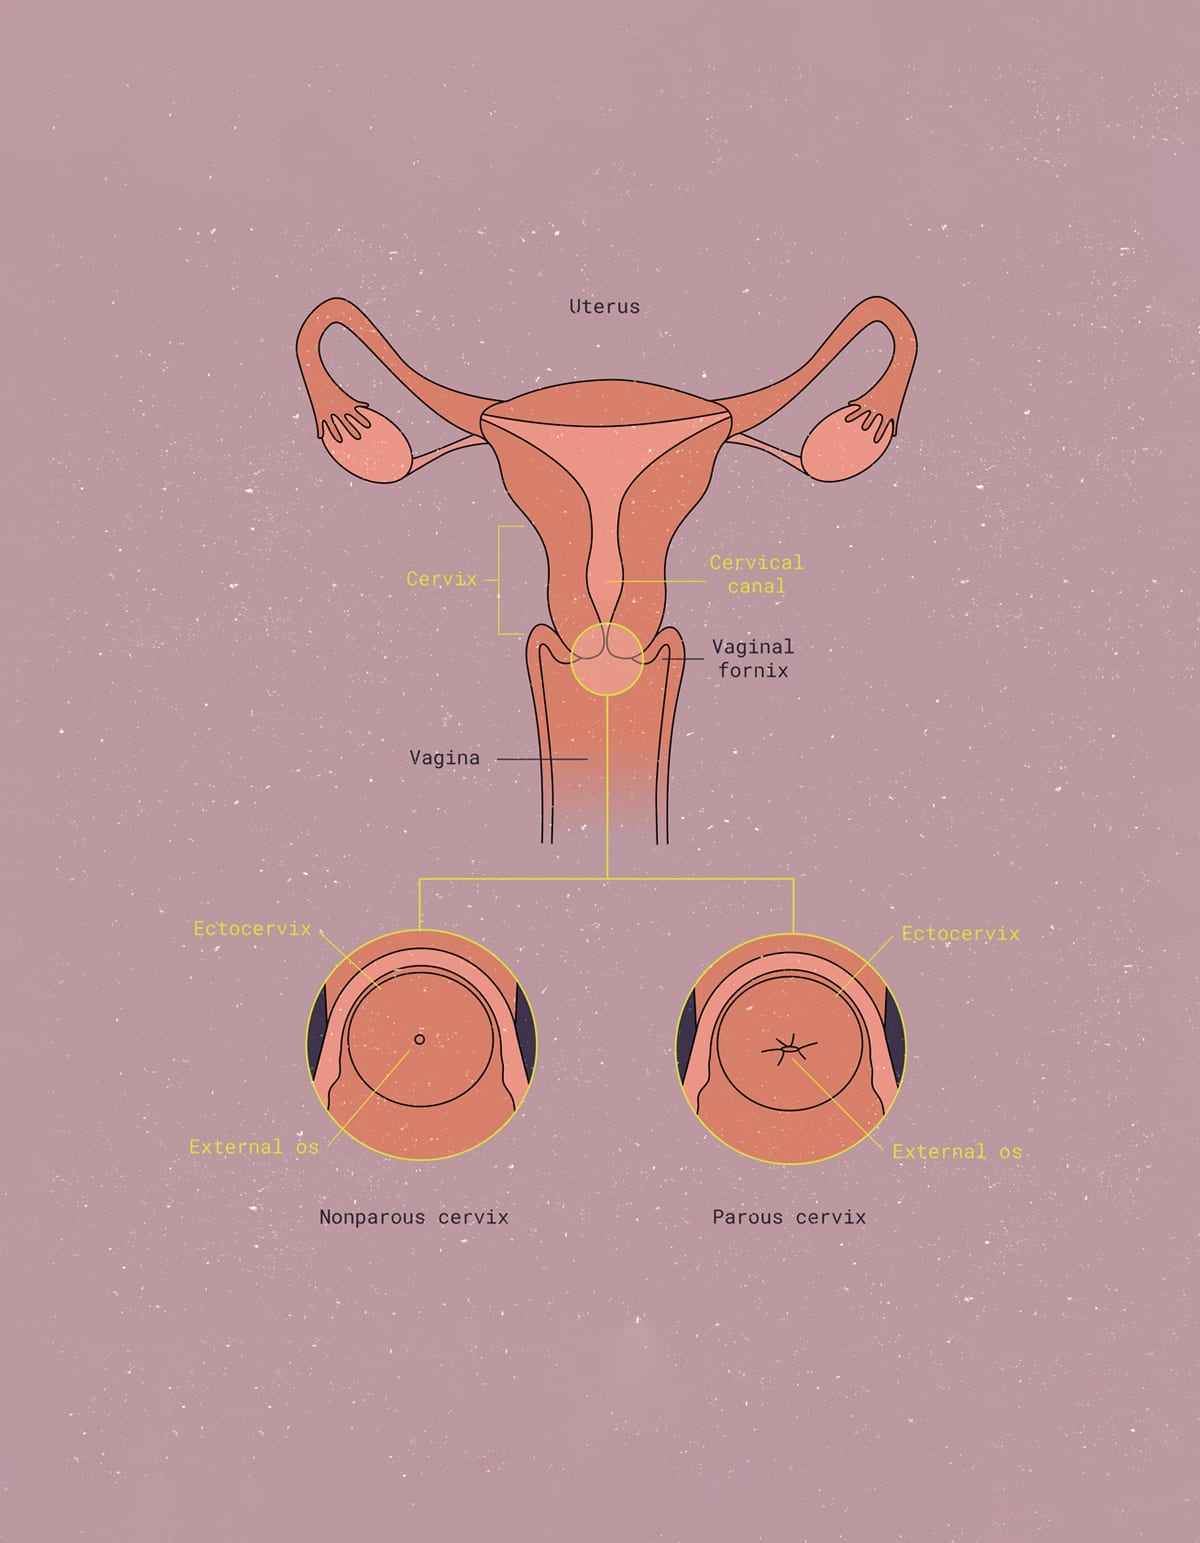 Cervix penetrating